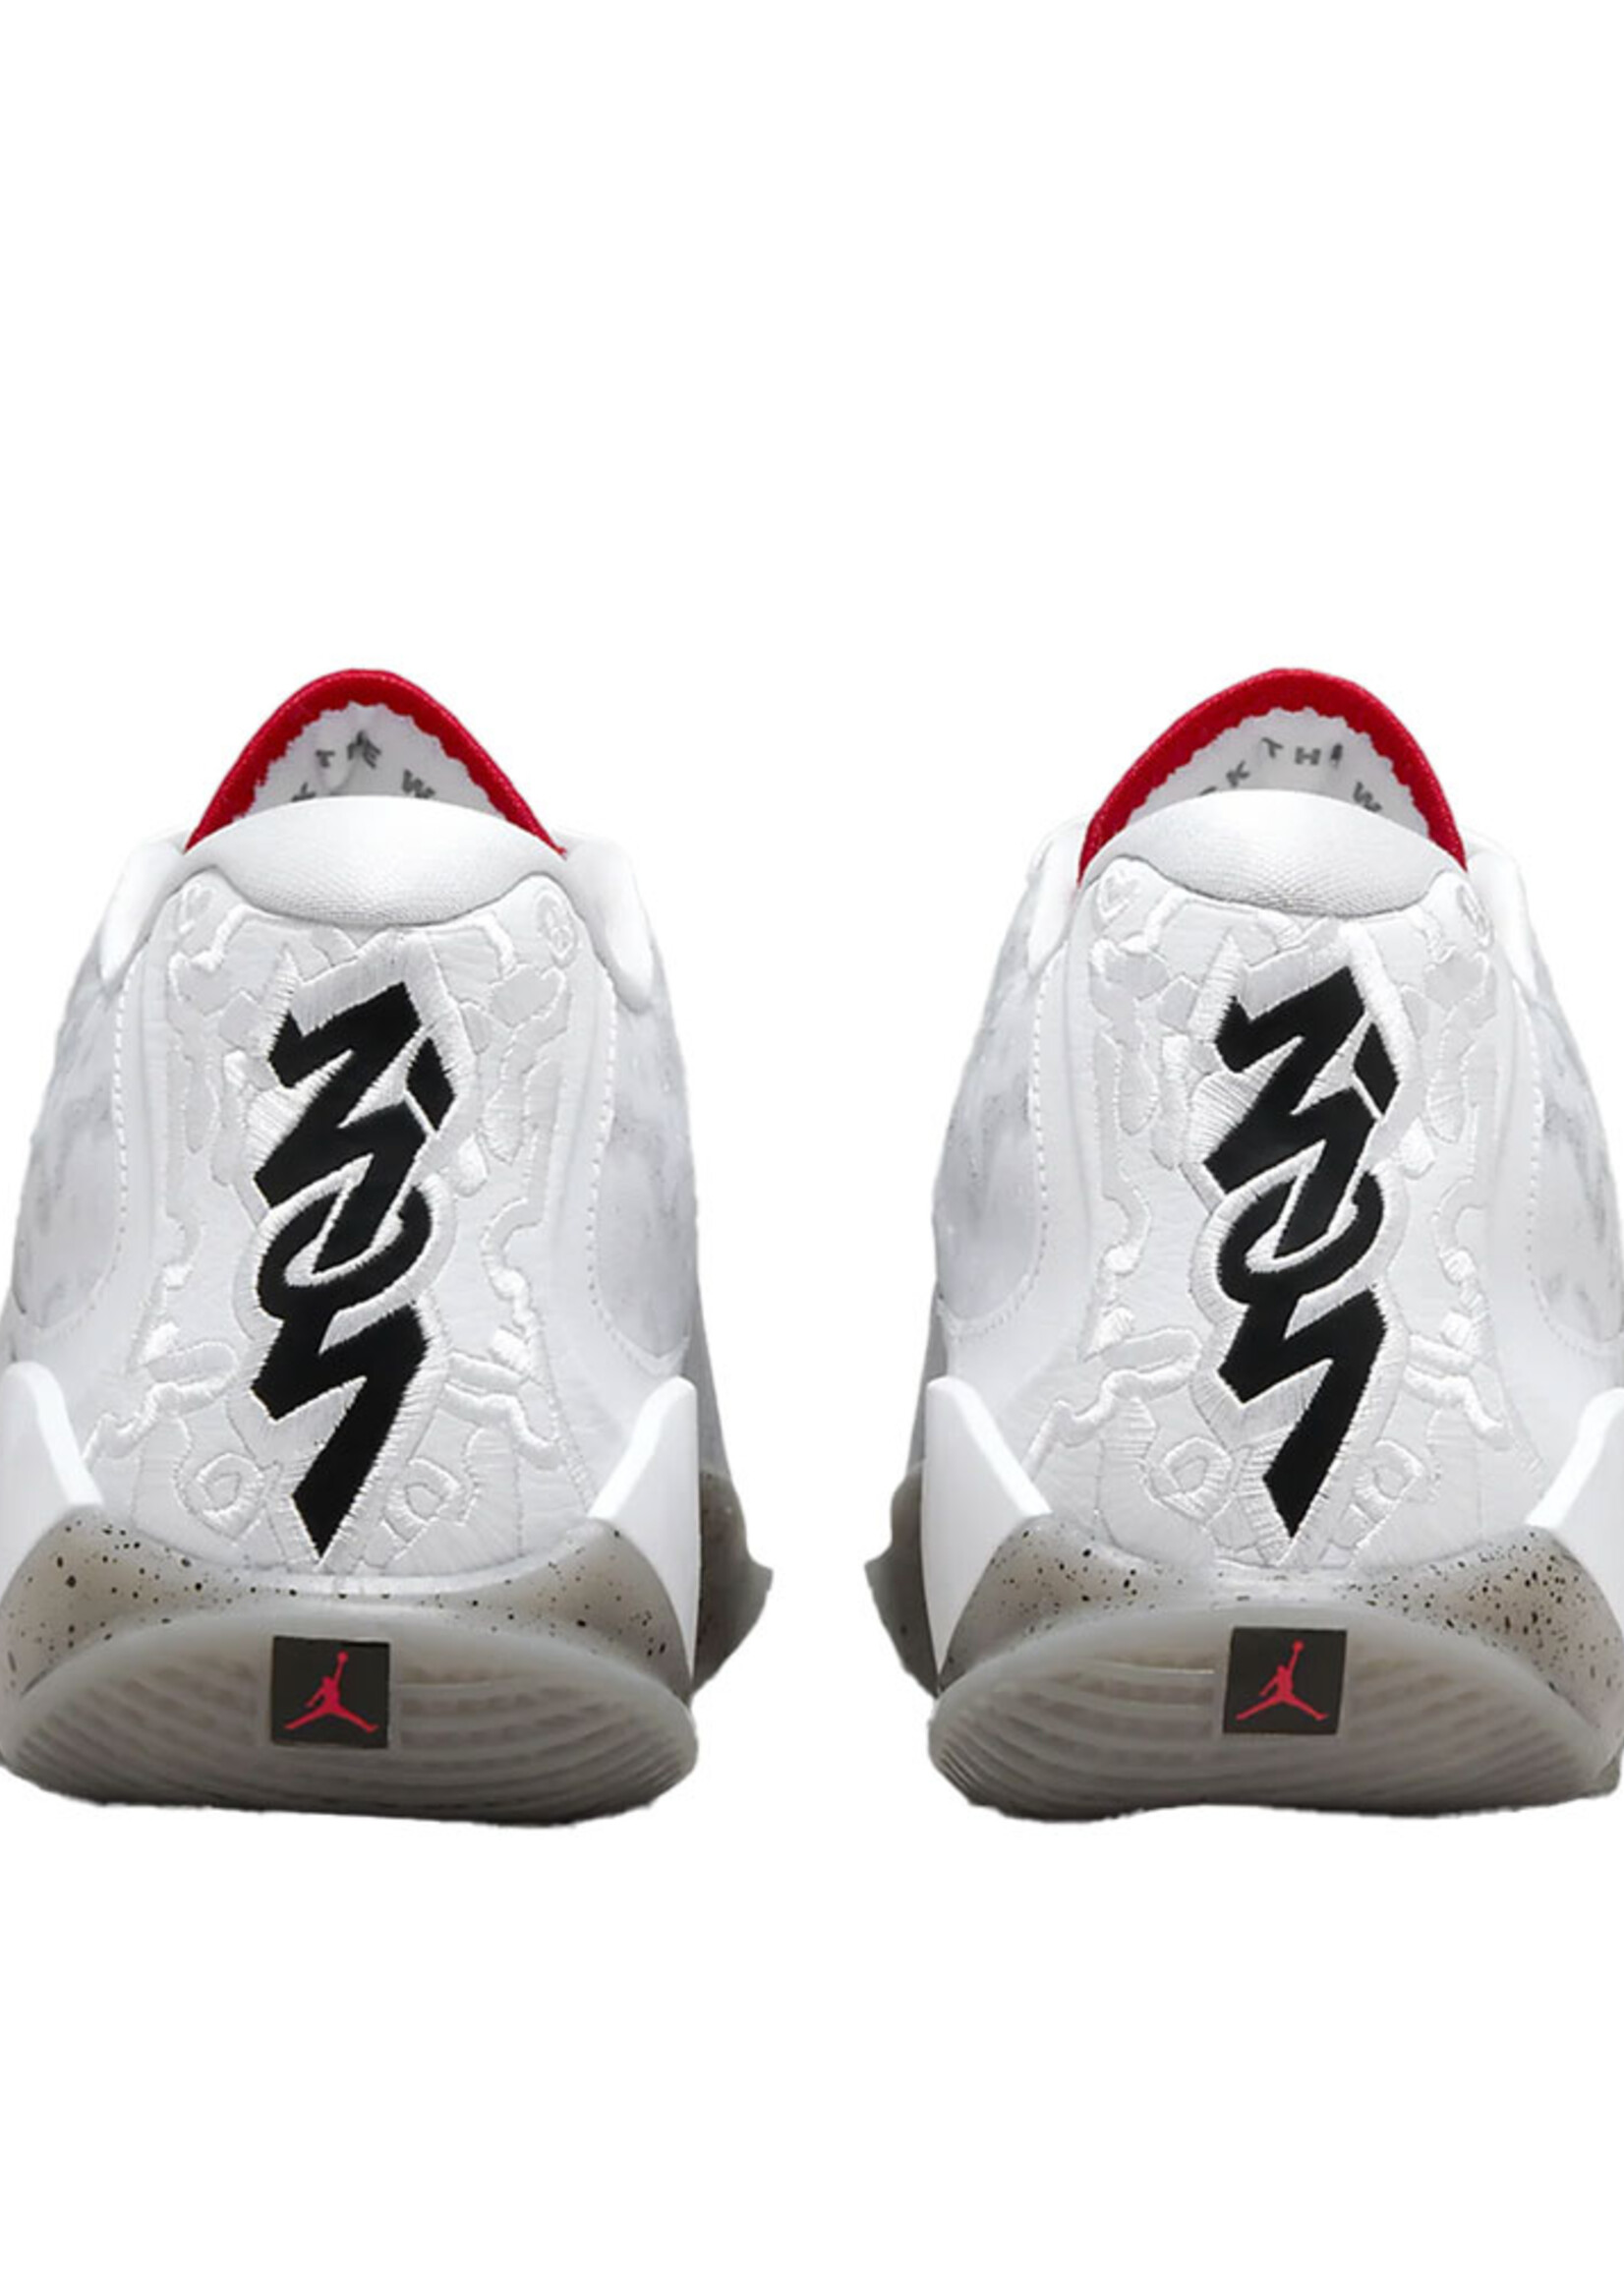 Nike Jordan Zion 3 Wit Rood